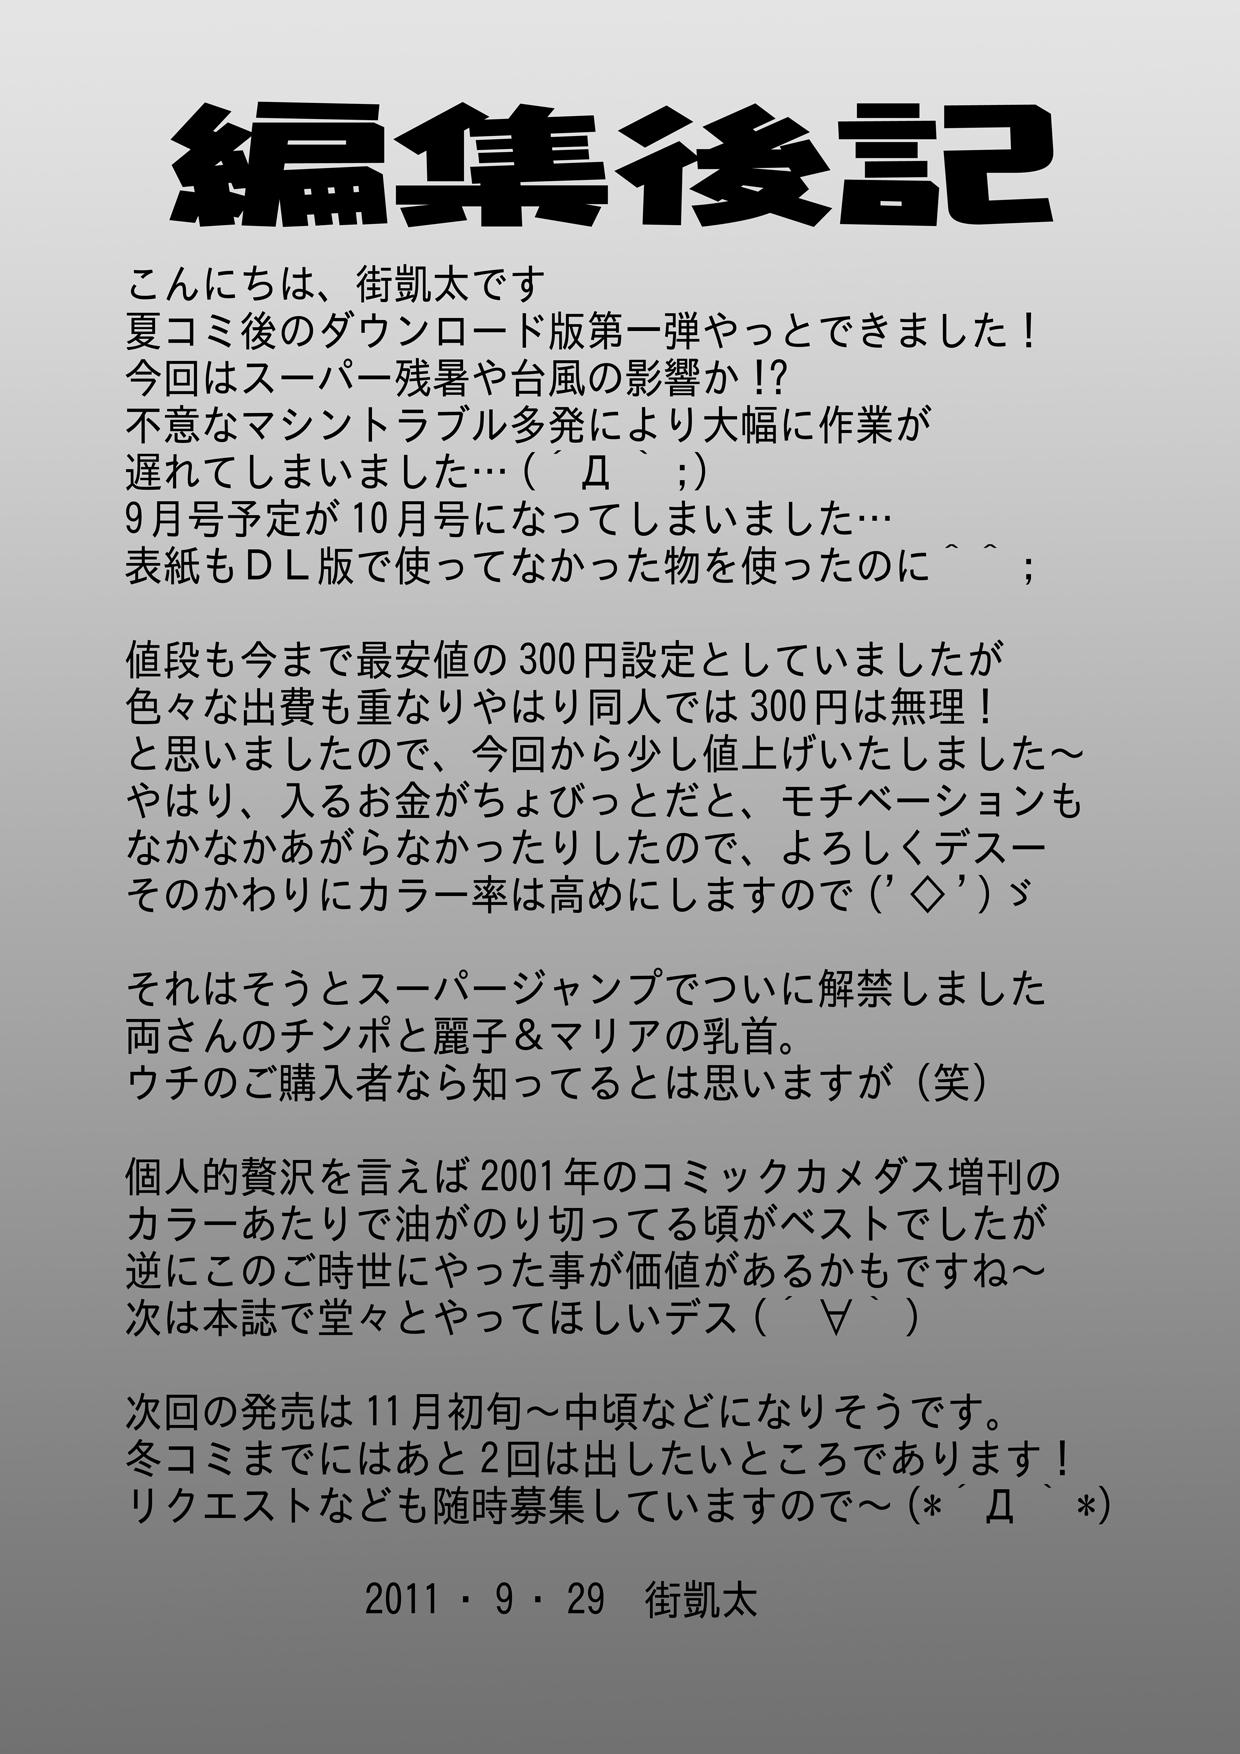 Free Petite Porn Maitsuki ko chi Kame Dainamaito vol.4 - Kochikame Bunduda - Page 21